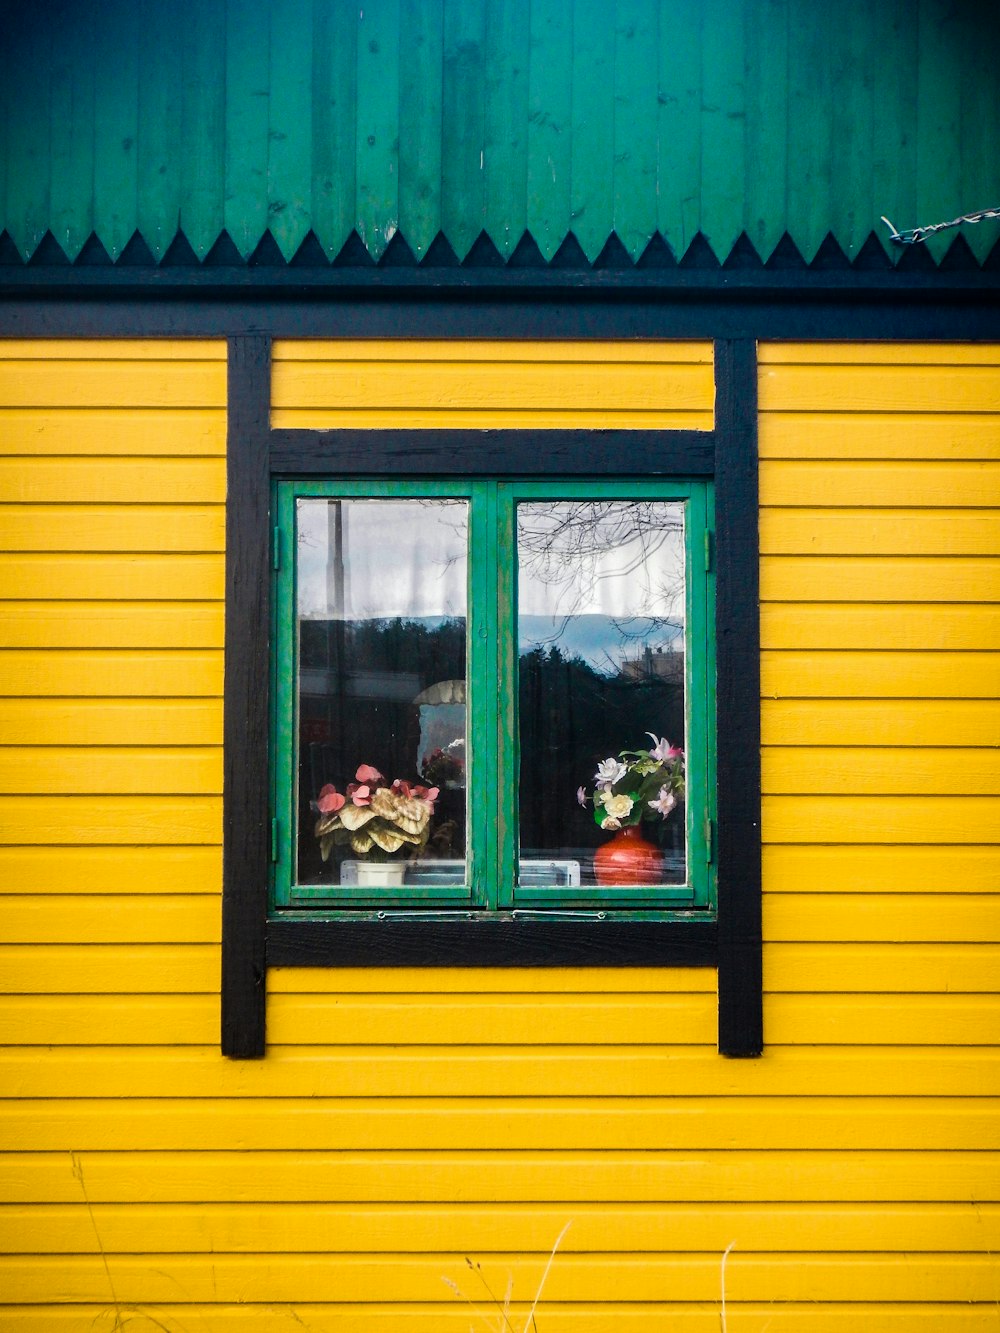 gelb und schwarz gestrichenes Haus mit grün gerahmtem Glasfenster